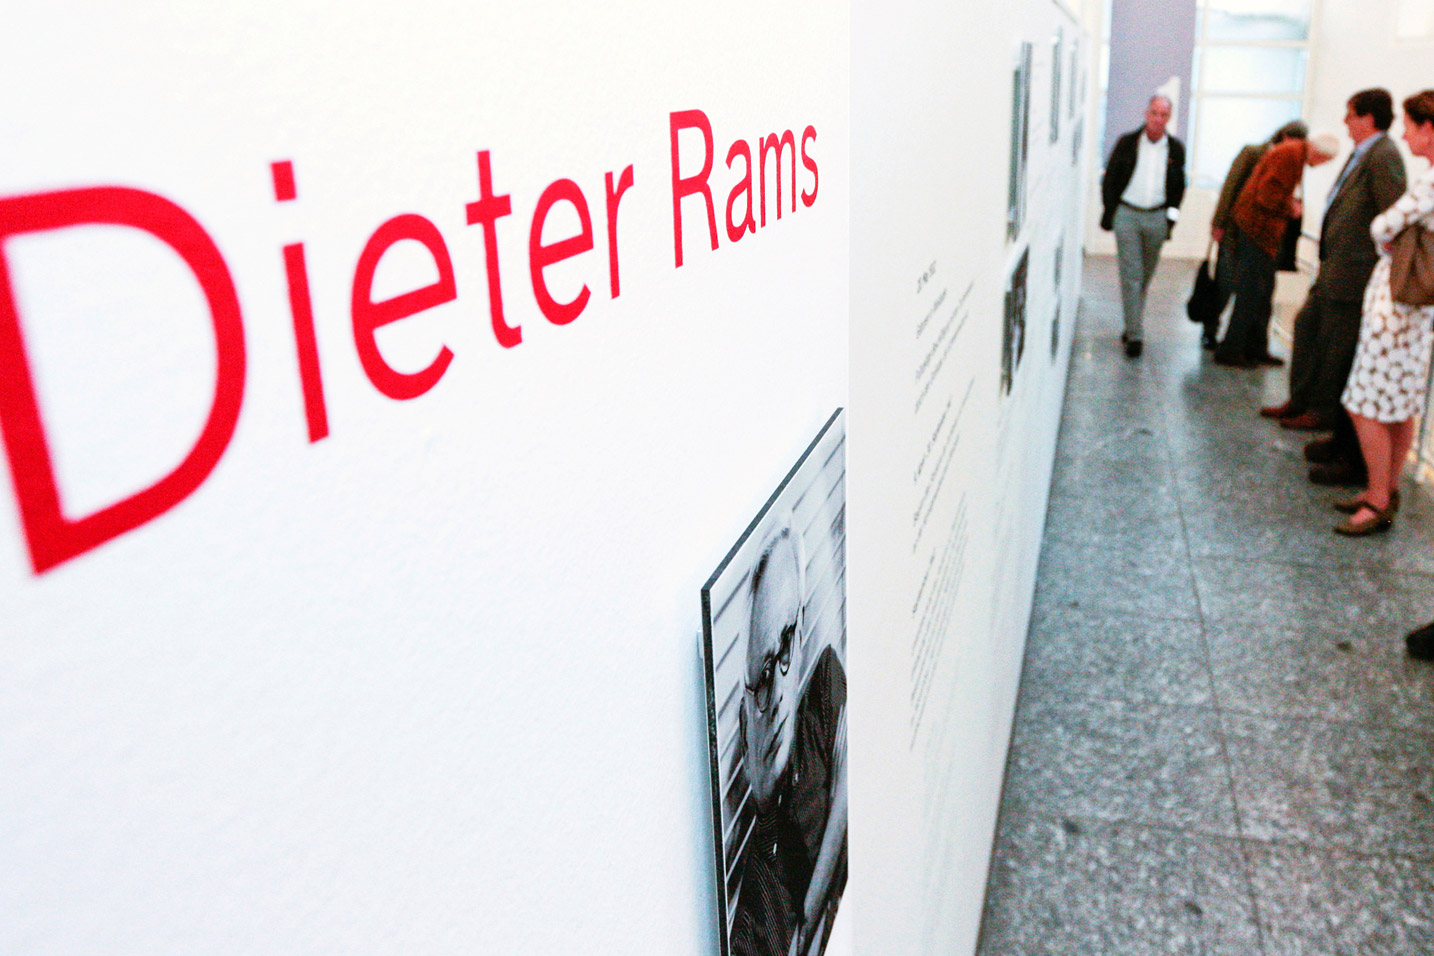 Museum Angewandte Kunst Frankfurt: Dieter Rams